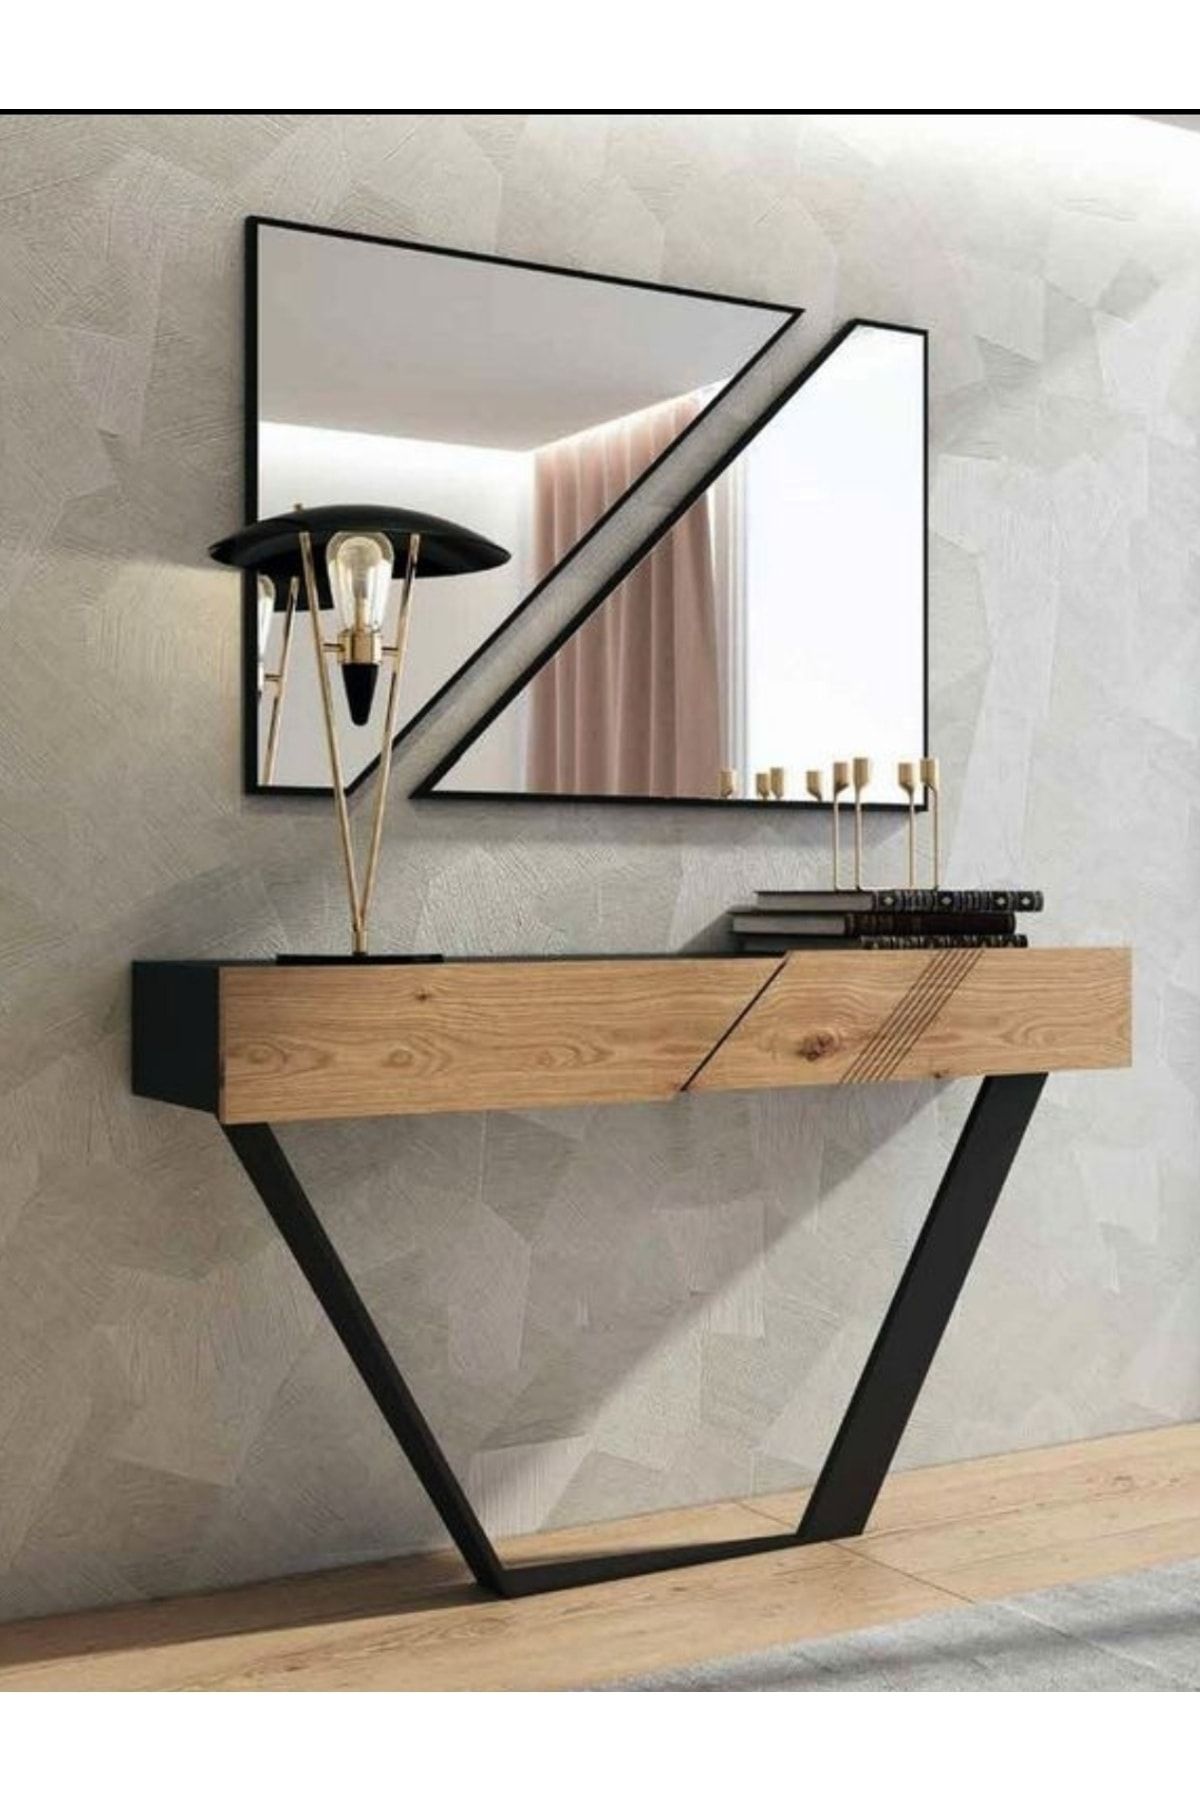 CG HOME Dekoratif Ayna, Konsol Aynası, Dresuar Aynası 1. Kalite Ayna 90cm * 50cm